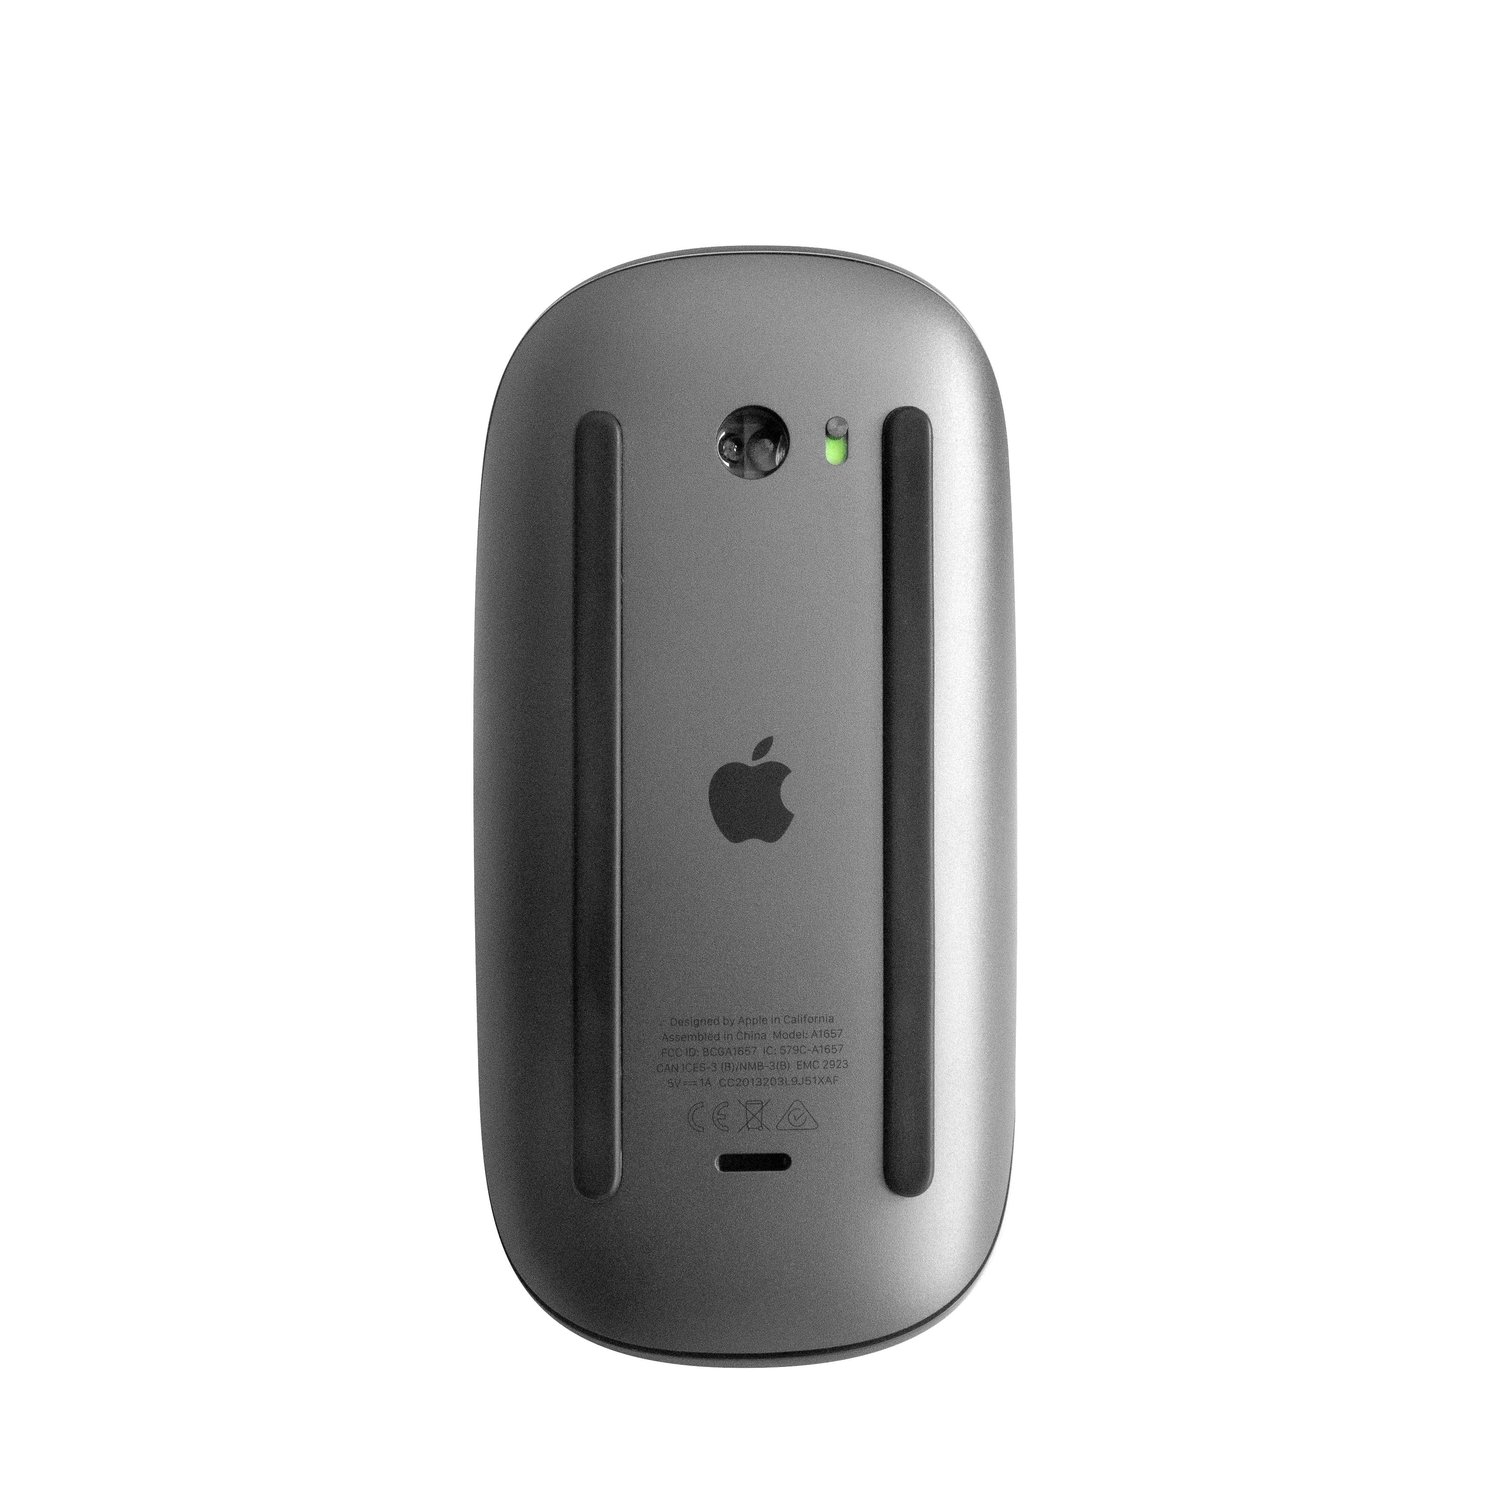 Apple MRME2LL/A Magic Mouse 2 (Current Model) -... at MacSales.com